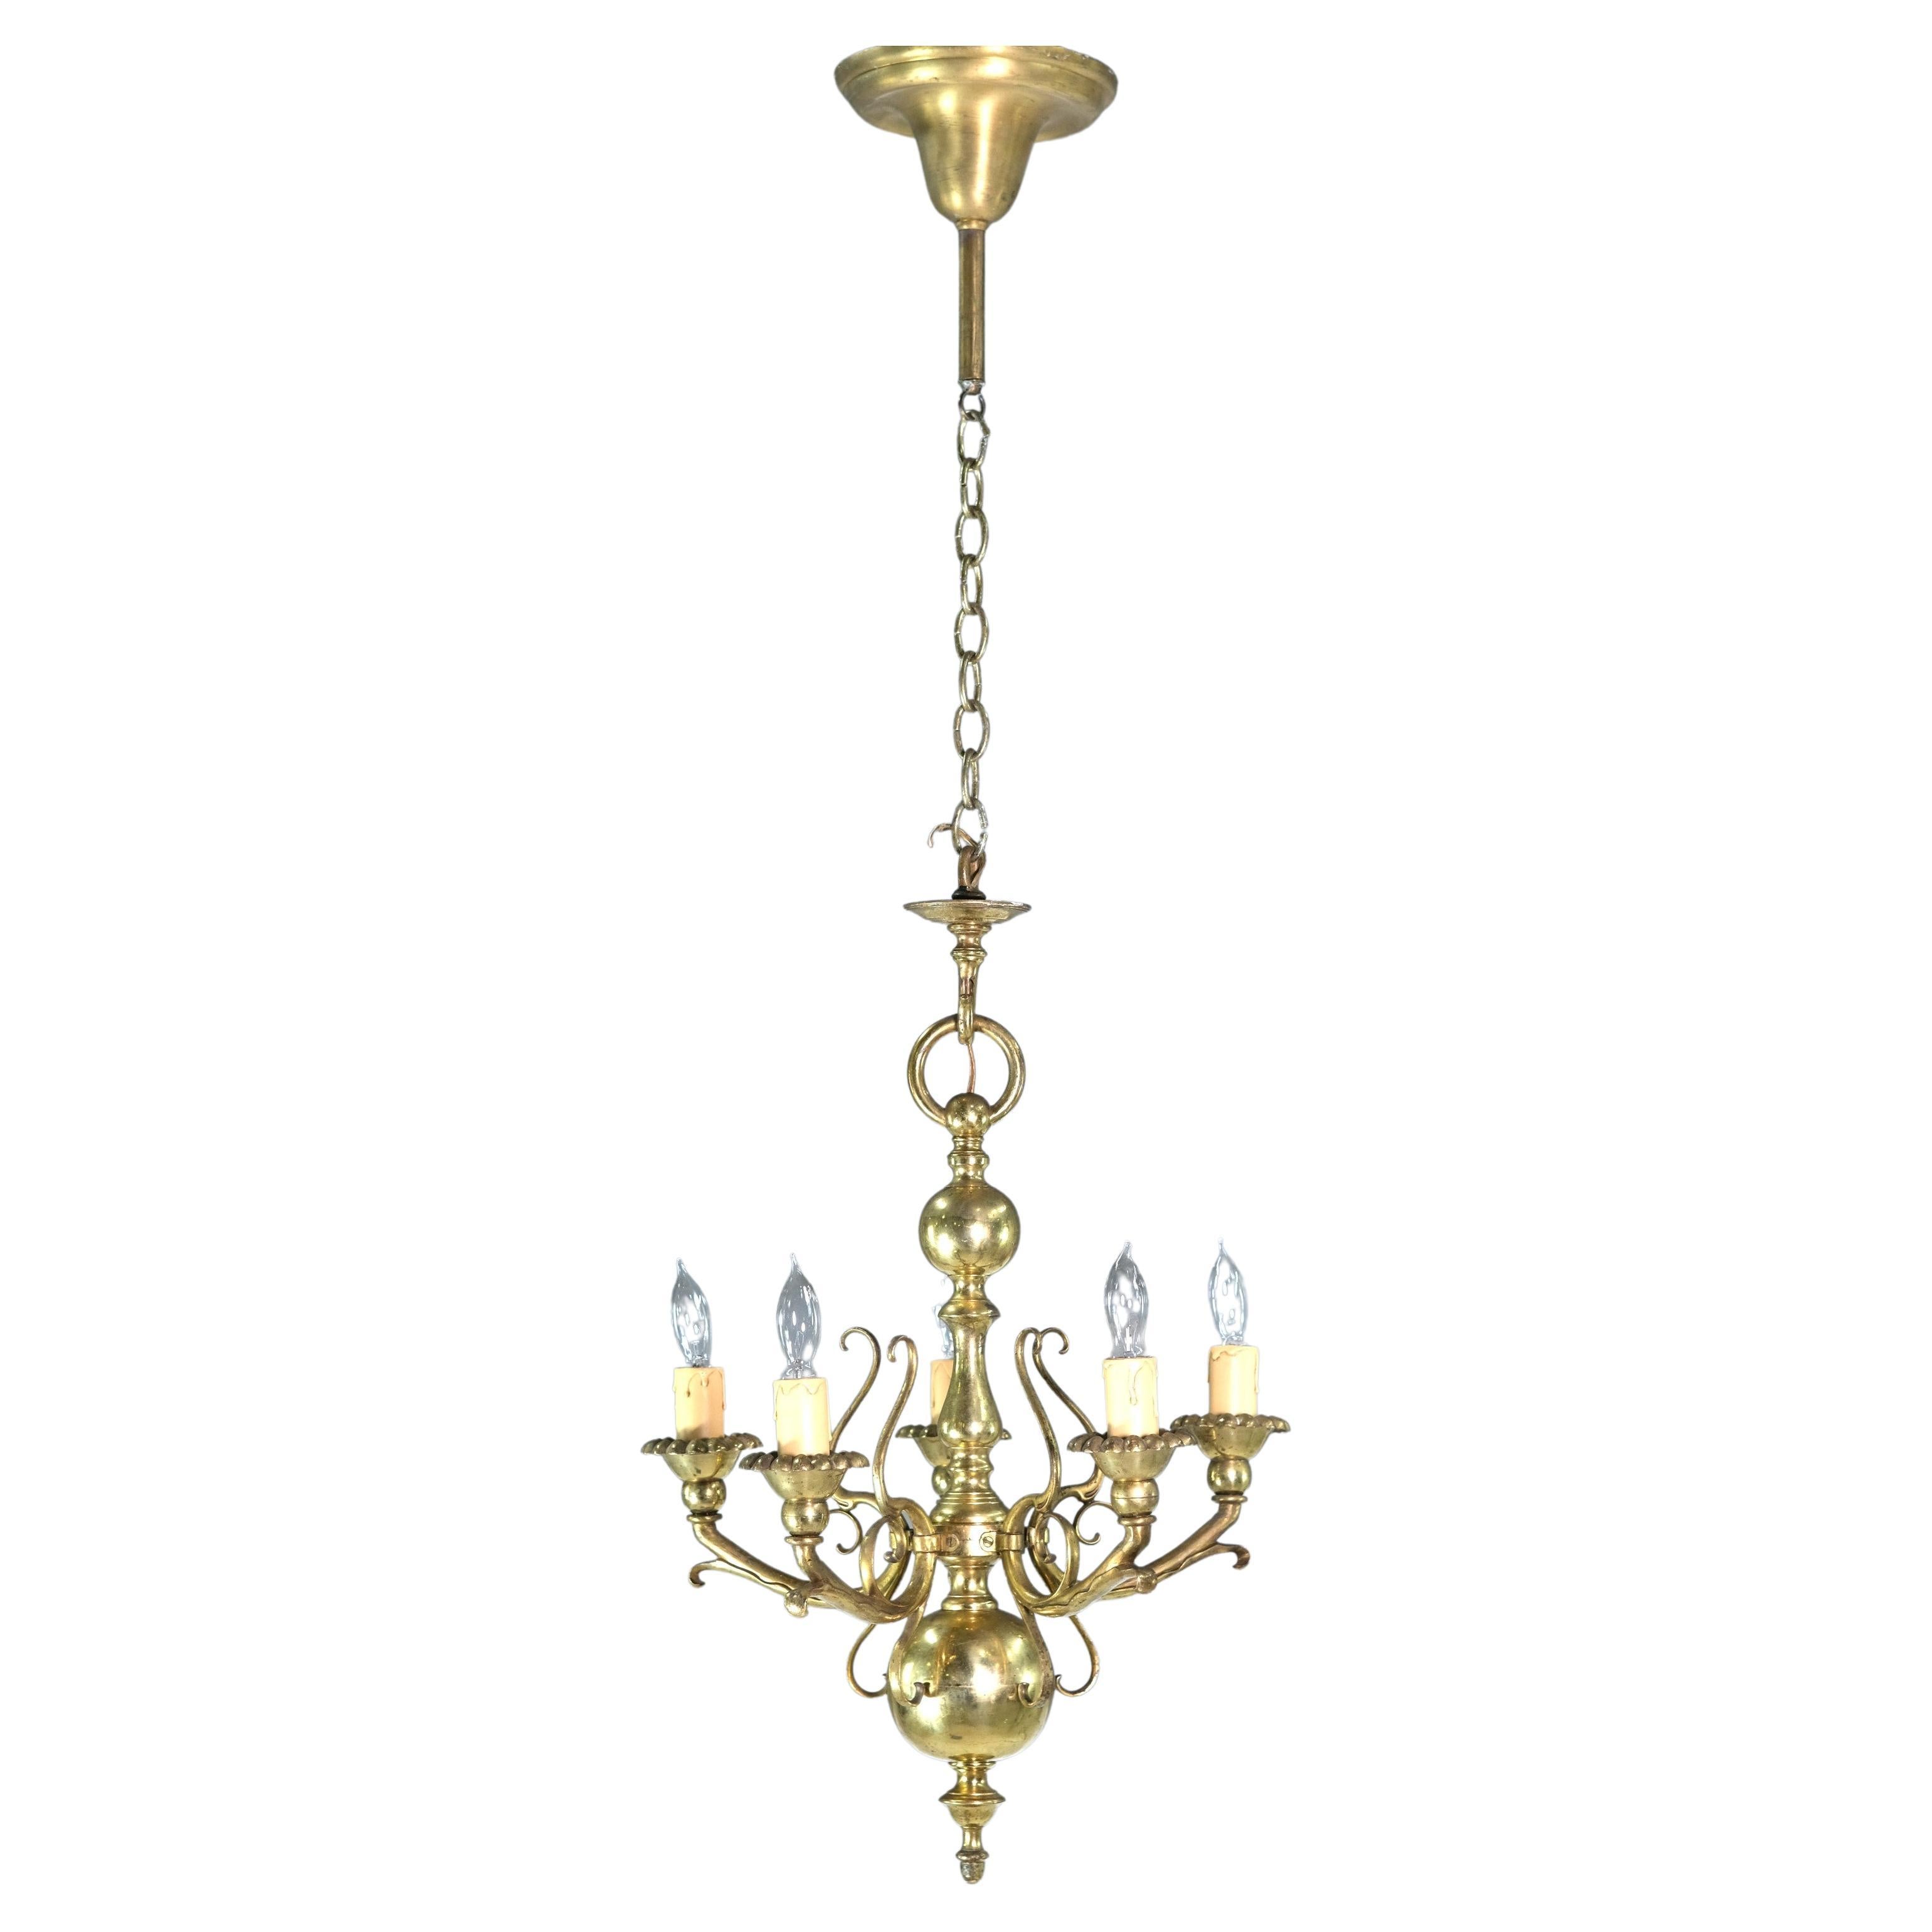 Baroque Solid Brass 5 Light Chandelier Florals Swirls Design